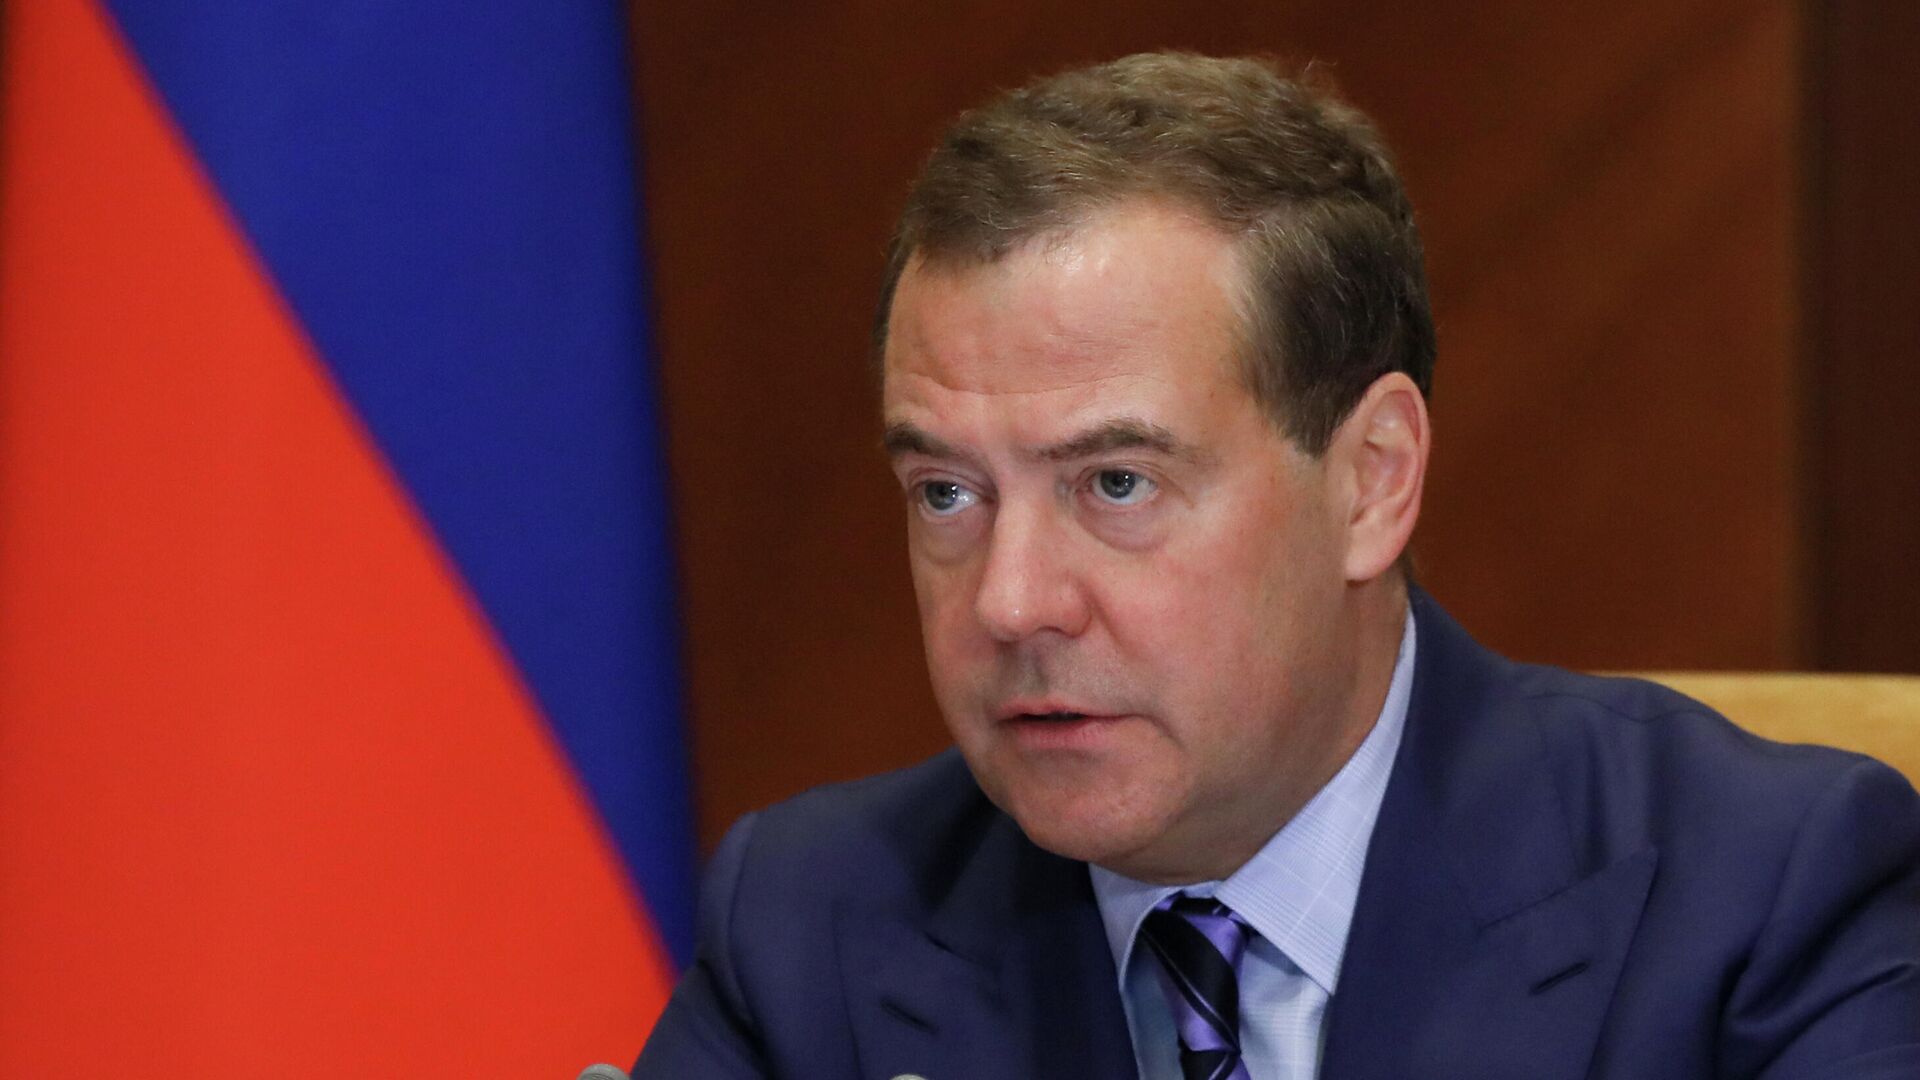 Медведев описал плачевный конец "старой цивилизации" Европы по вине США